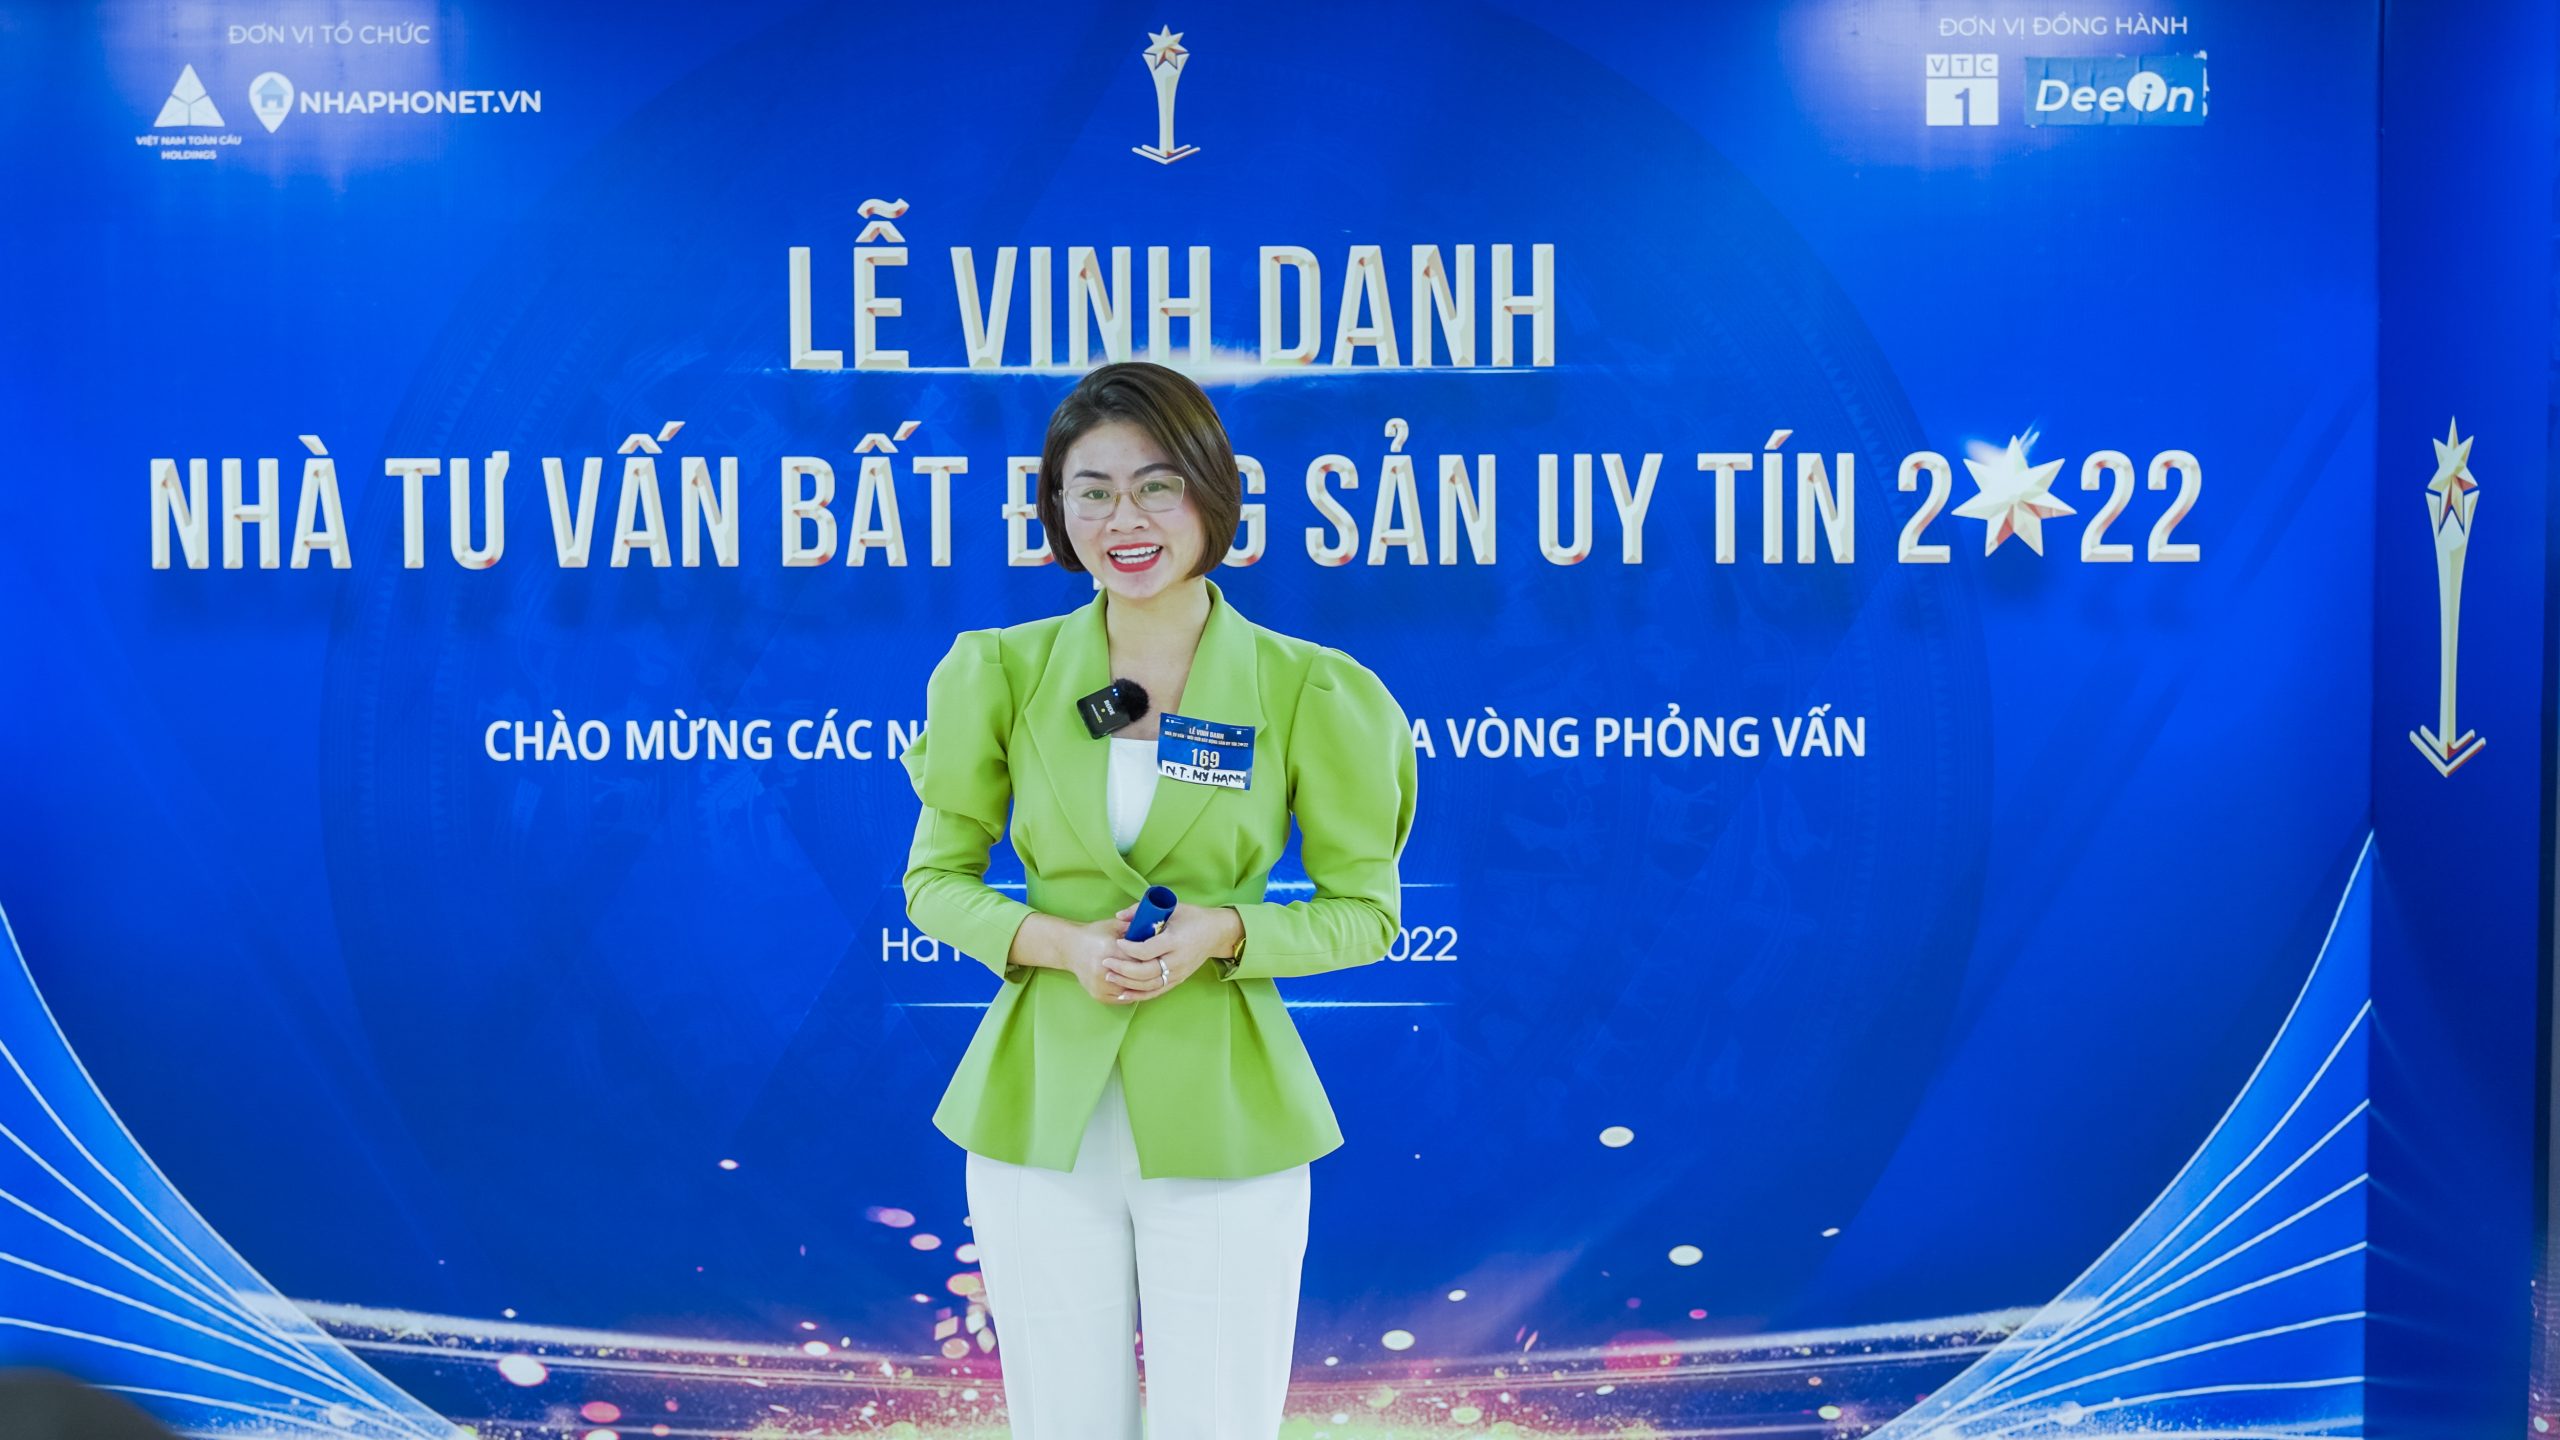 le vinh danh nha moi gioi bat dong san uy tin 2022 (8)